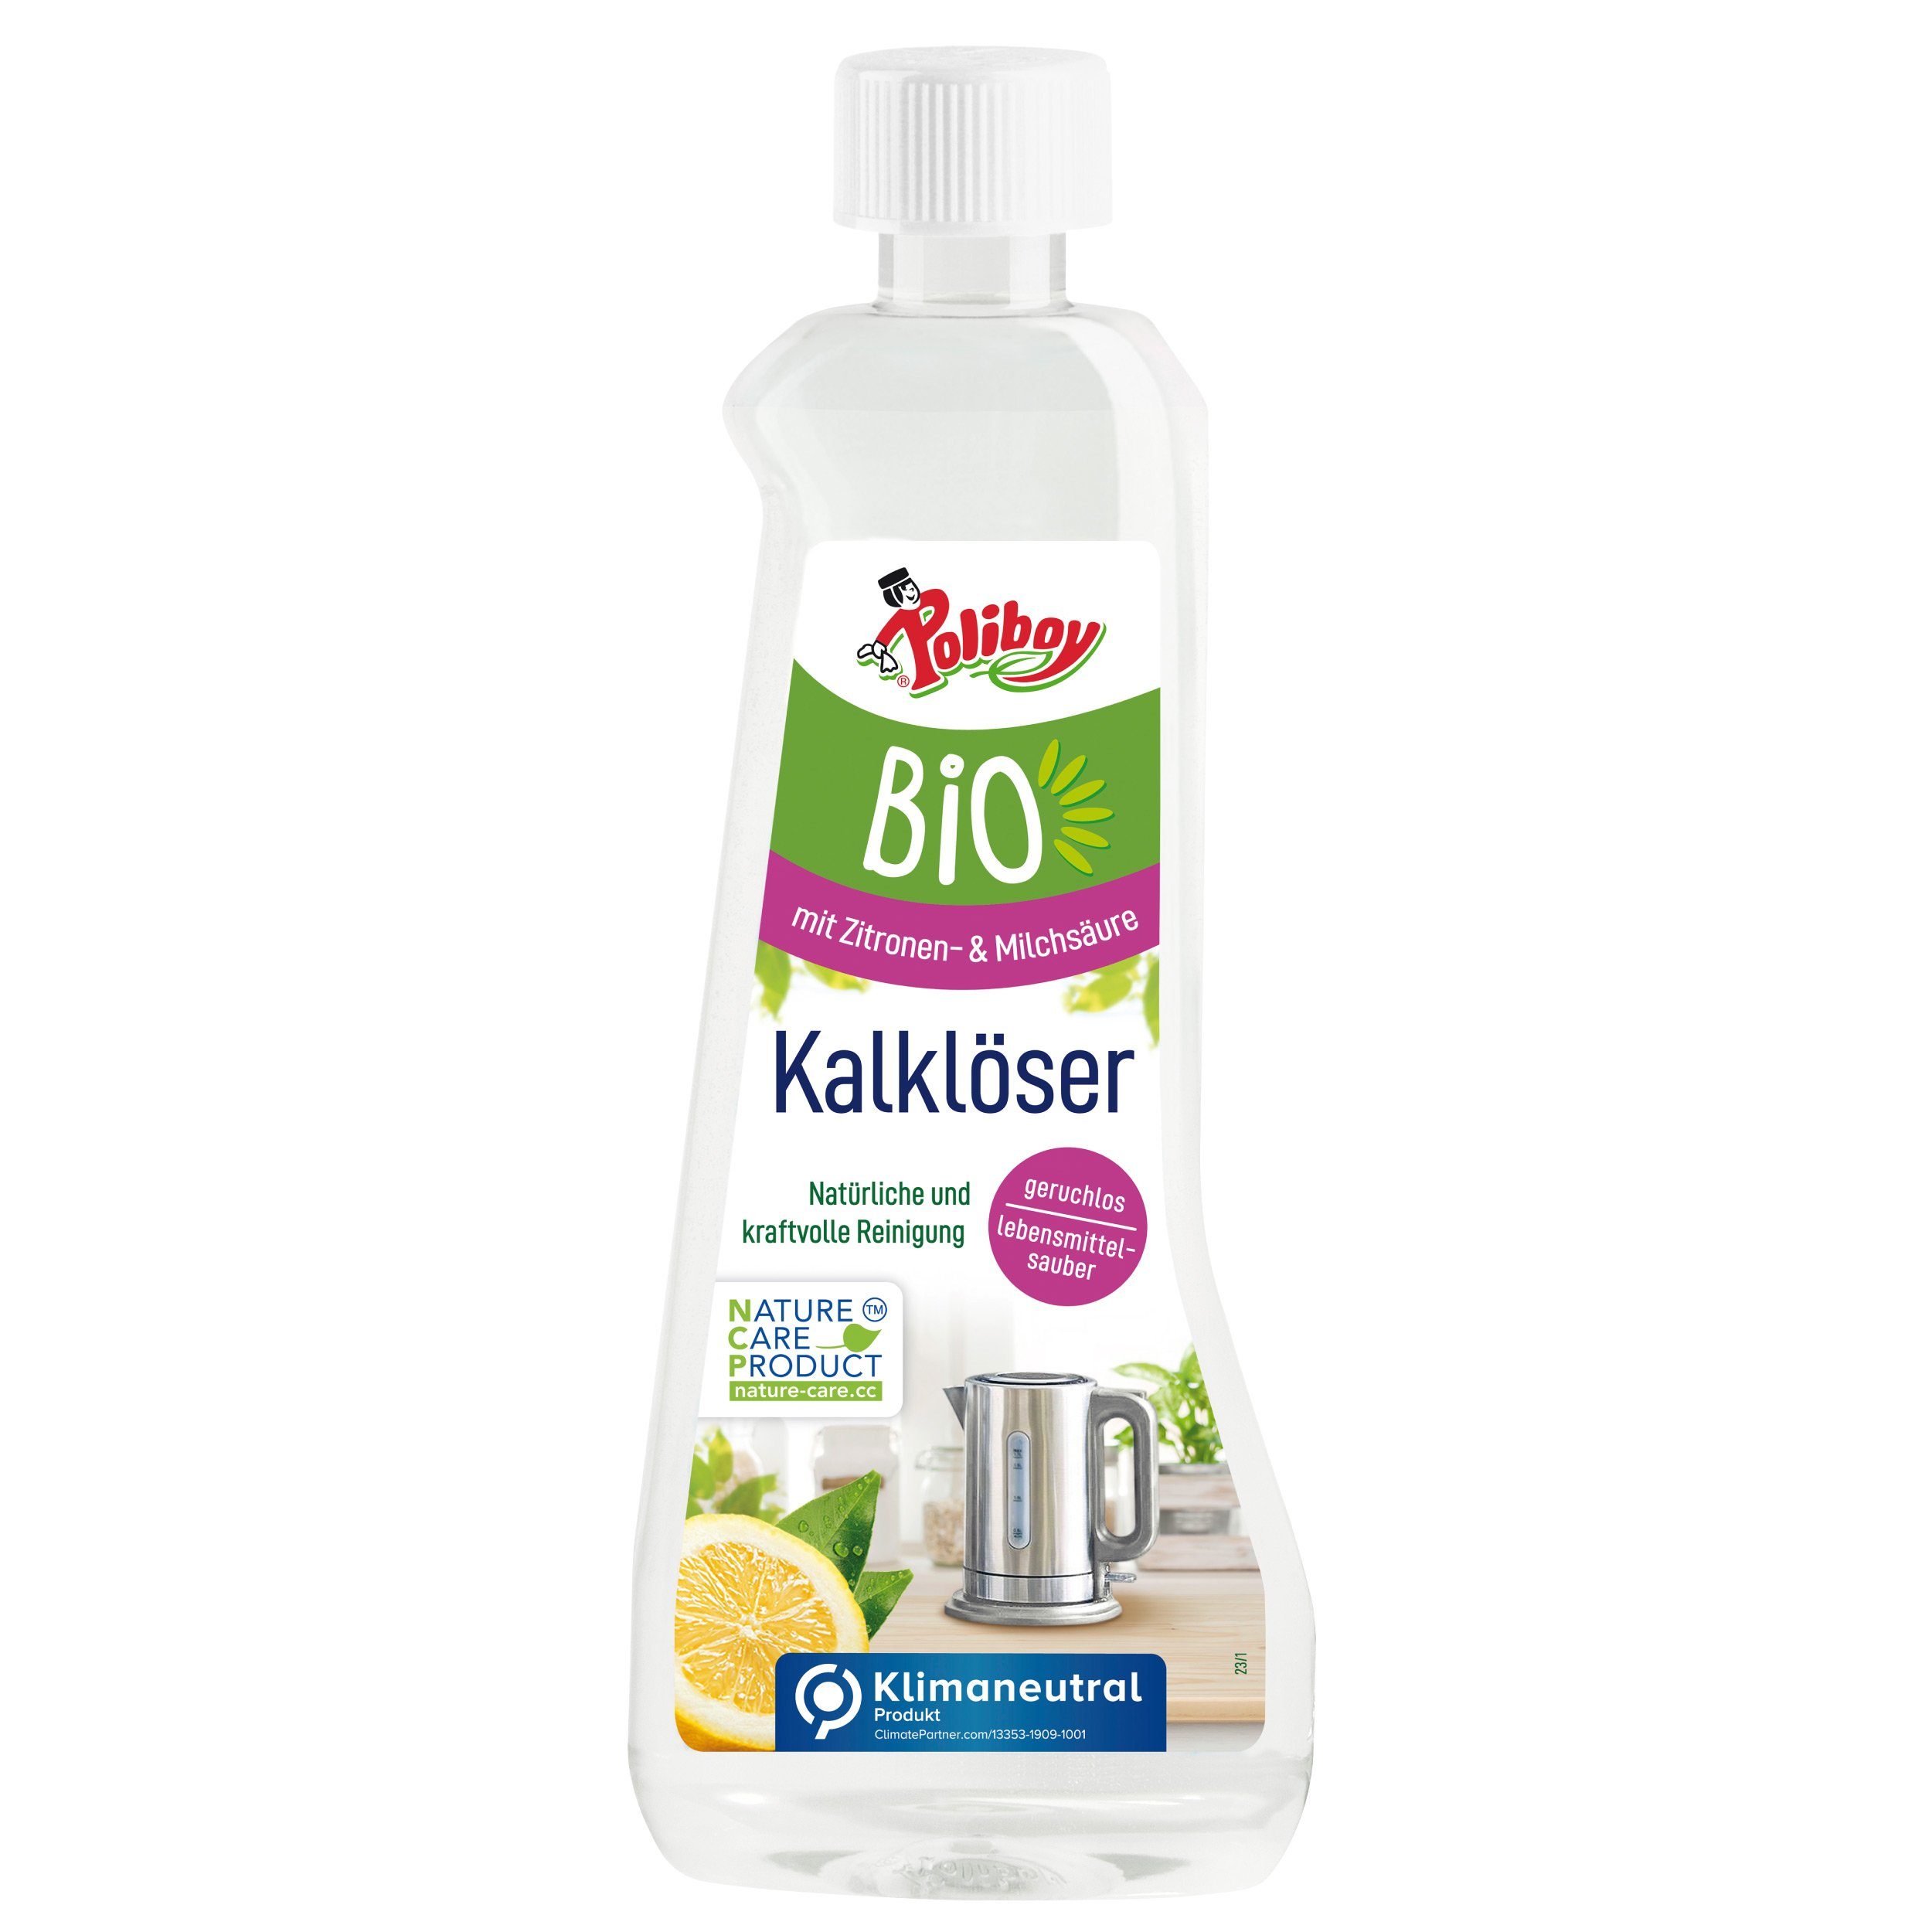 poliboy - 500 ml Made Germany) Kalklöser in - Bio Entkalken - ein natürliches hygienisches (für &